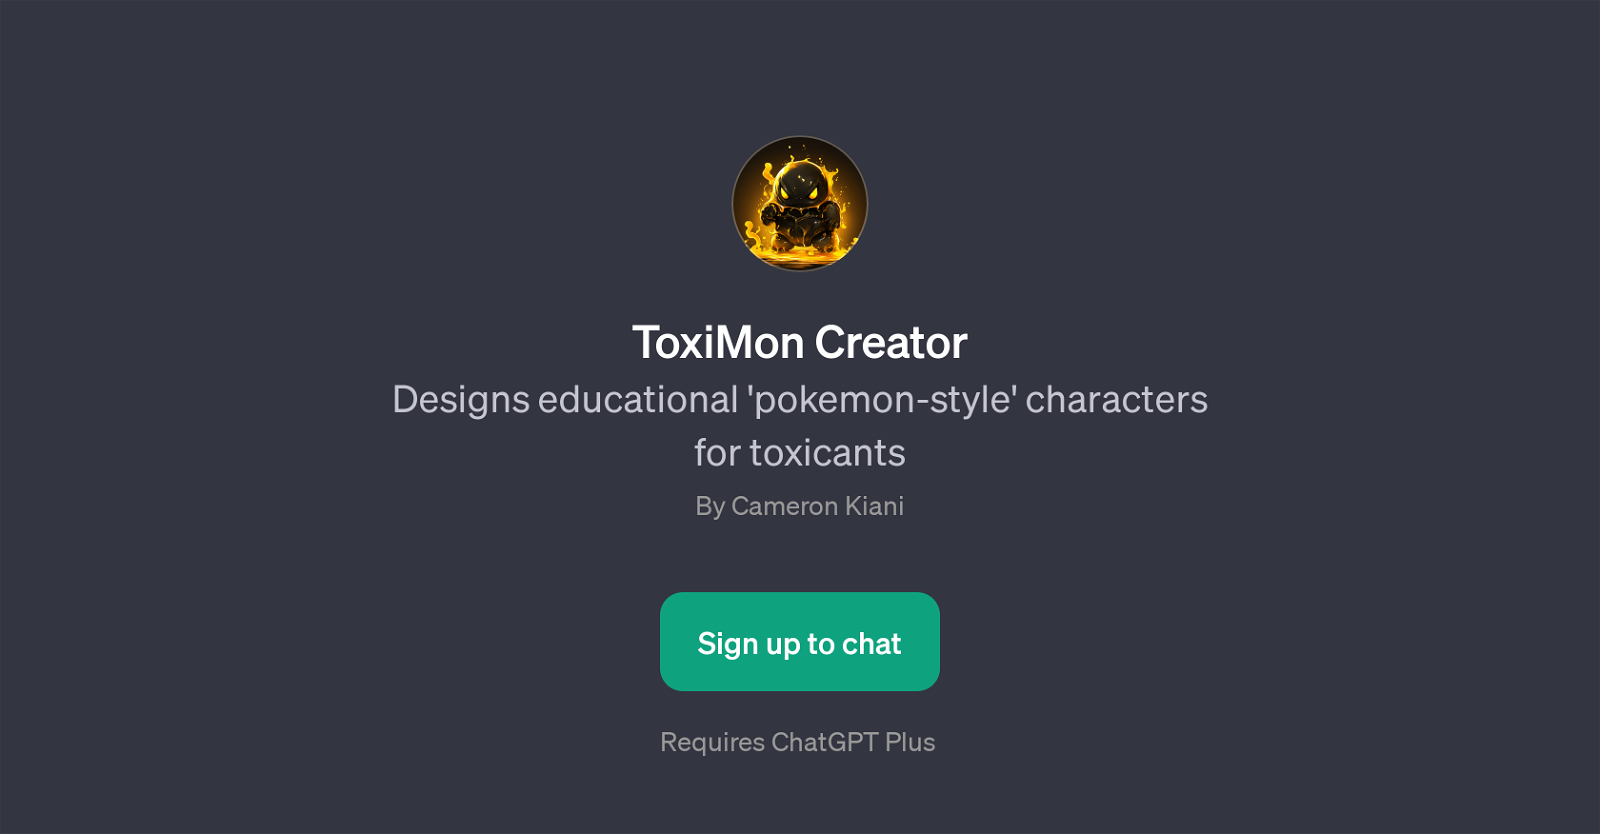 ToxiMon Creator website